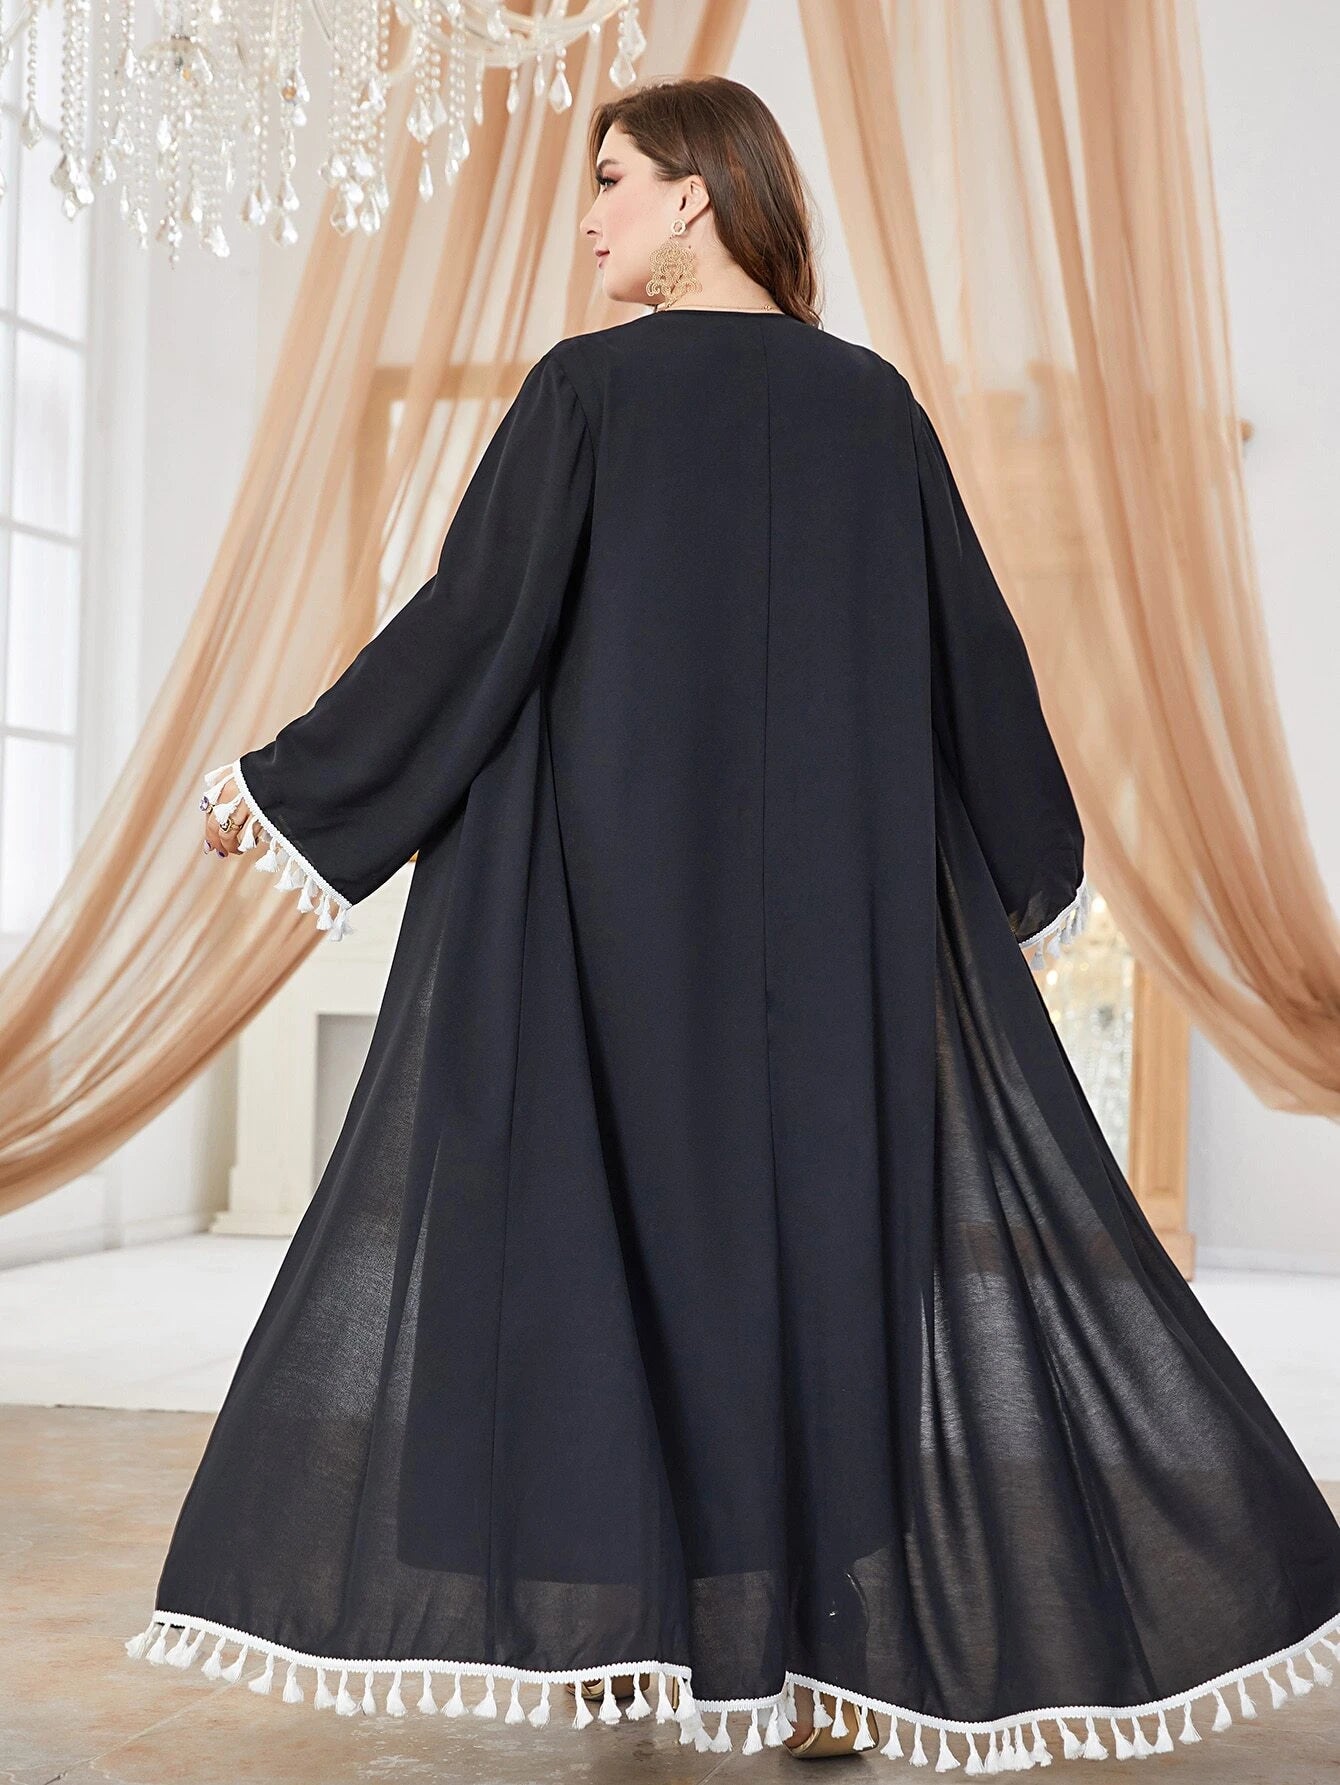 SHEIN Najma Plus Tassel Trim Belted Coat & Dress Set